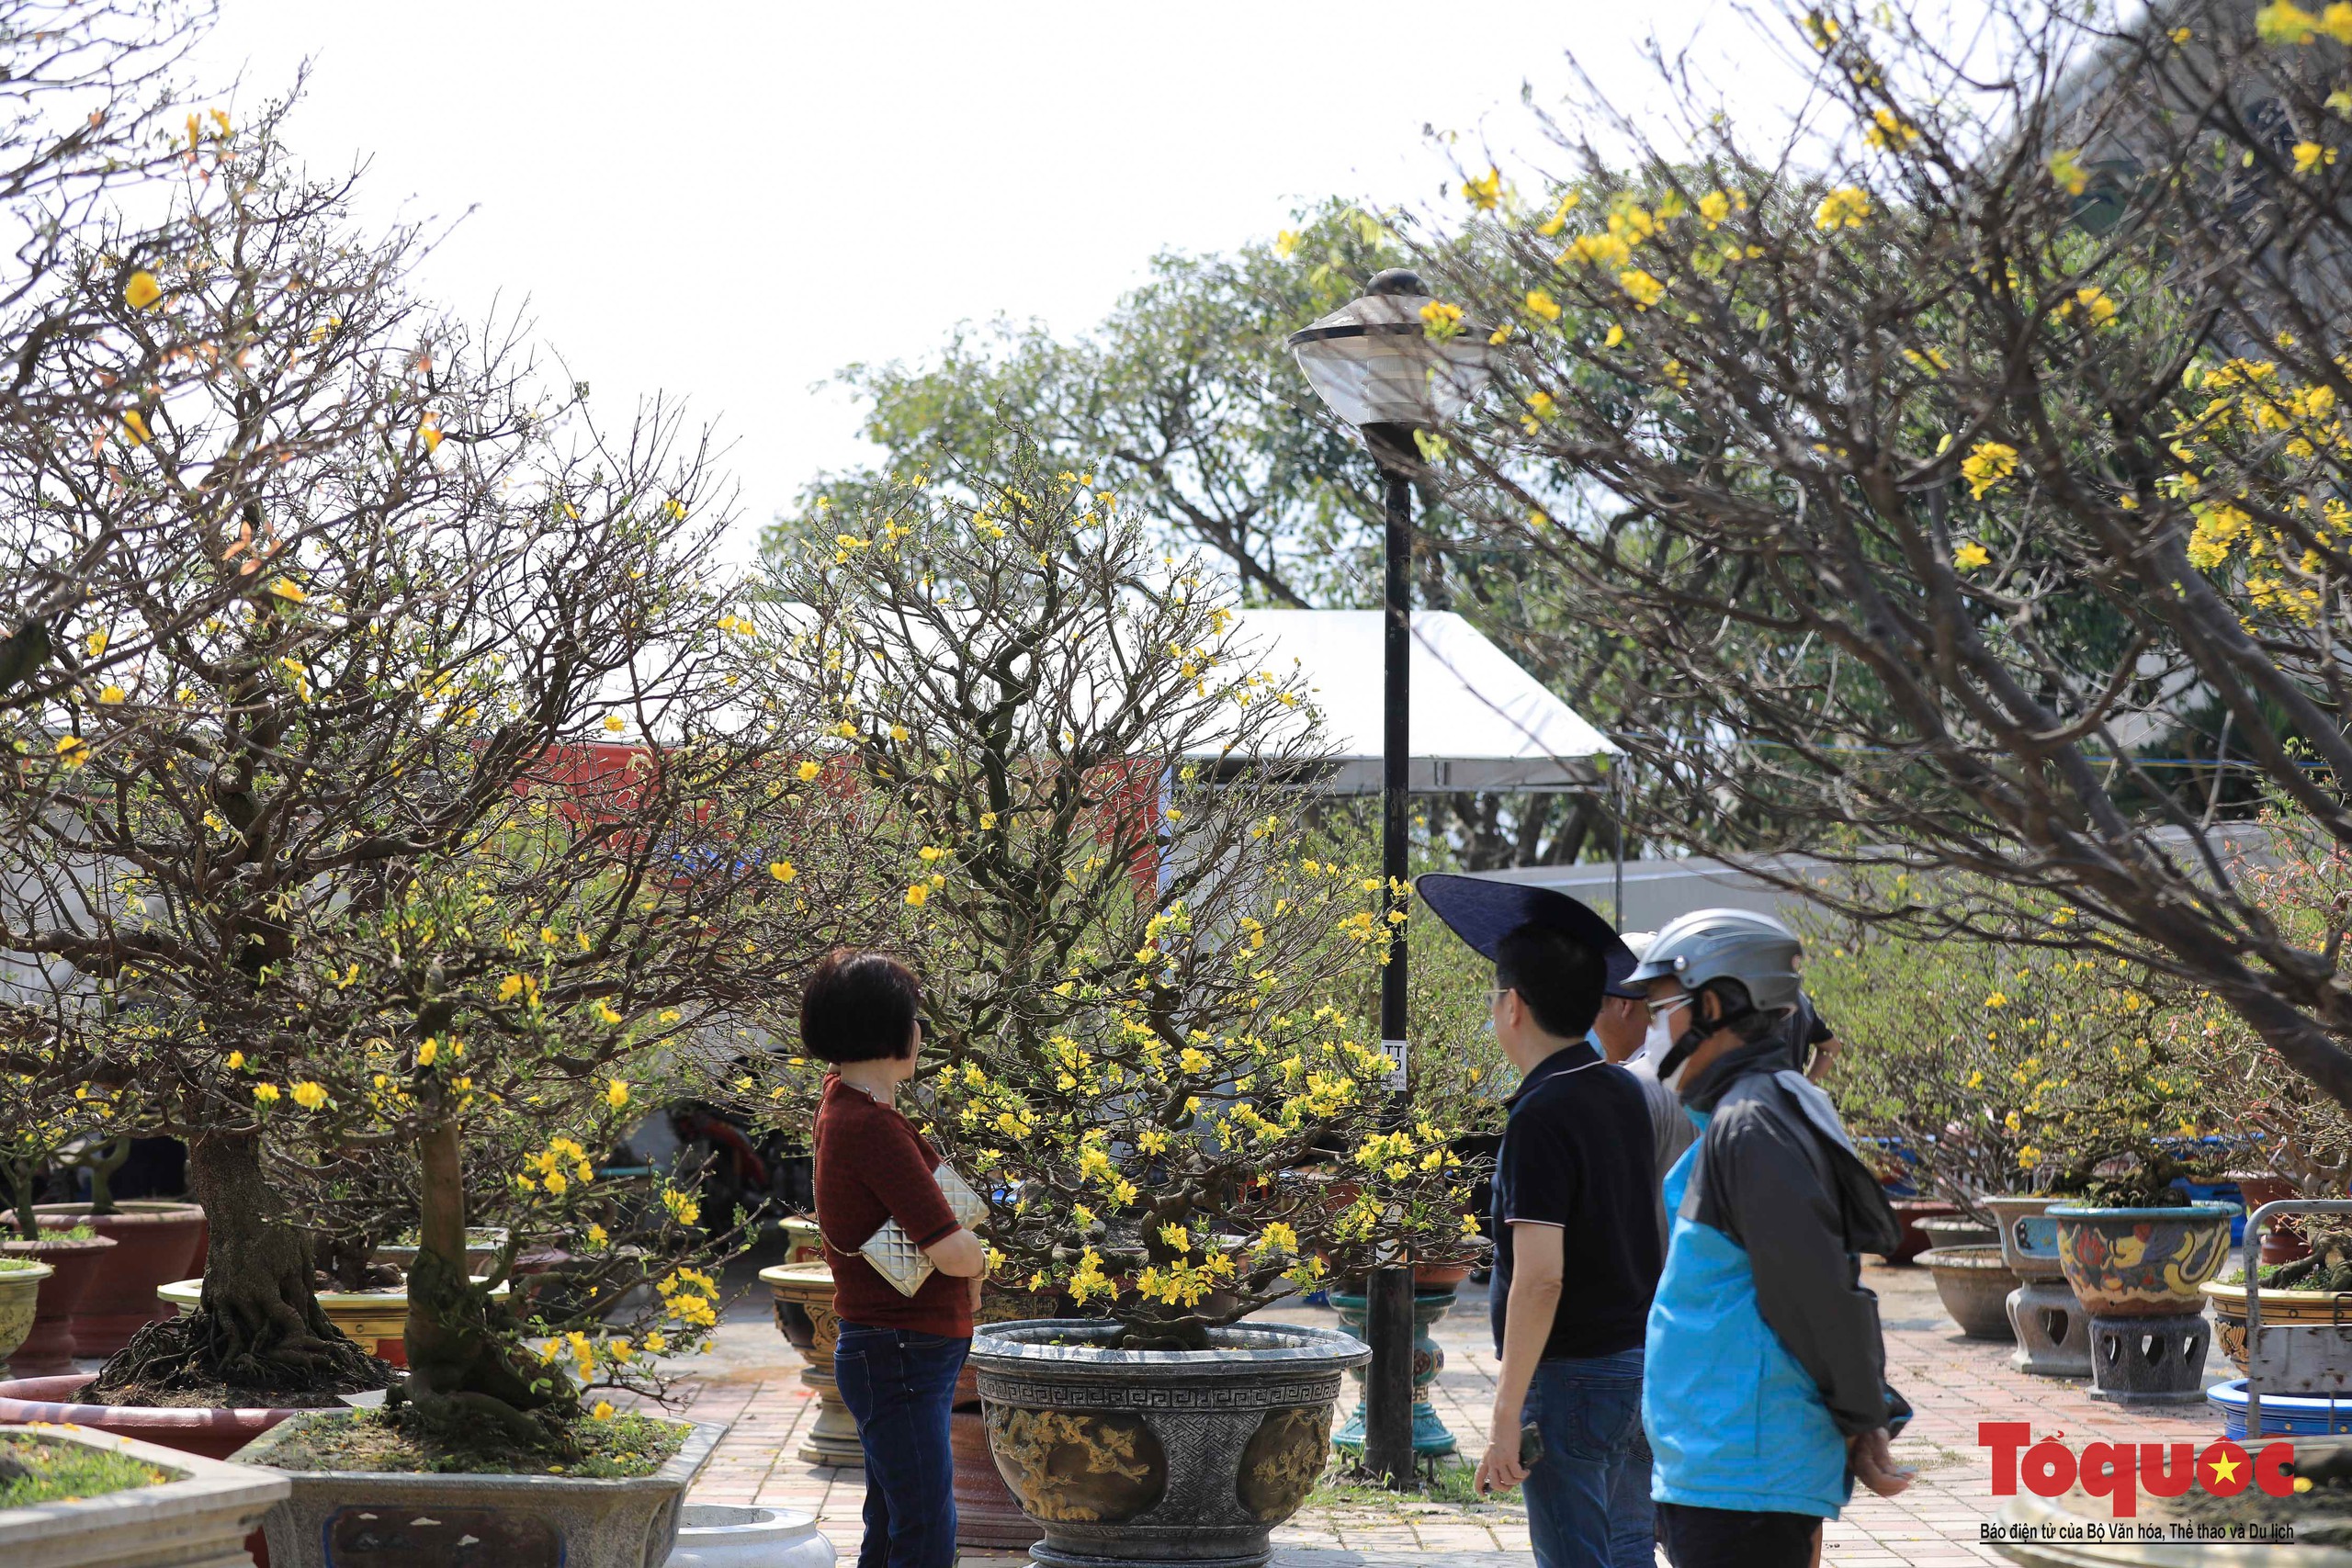 Ngắm nhiều cây cảnh đẹp tại chợ hoa Tết Đà Nẵng  - Ảnh 10.